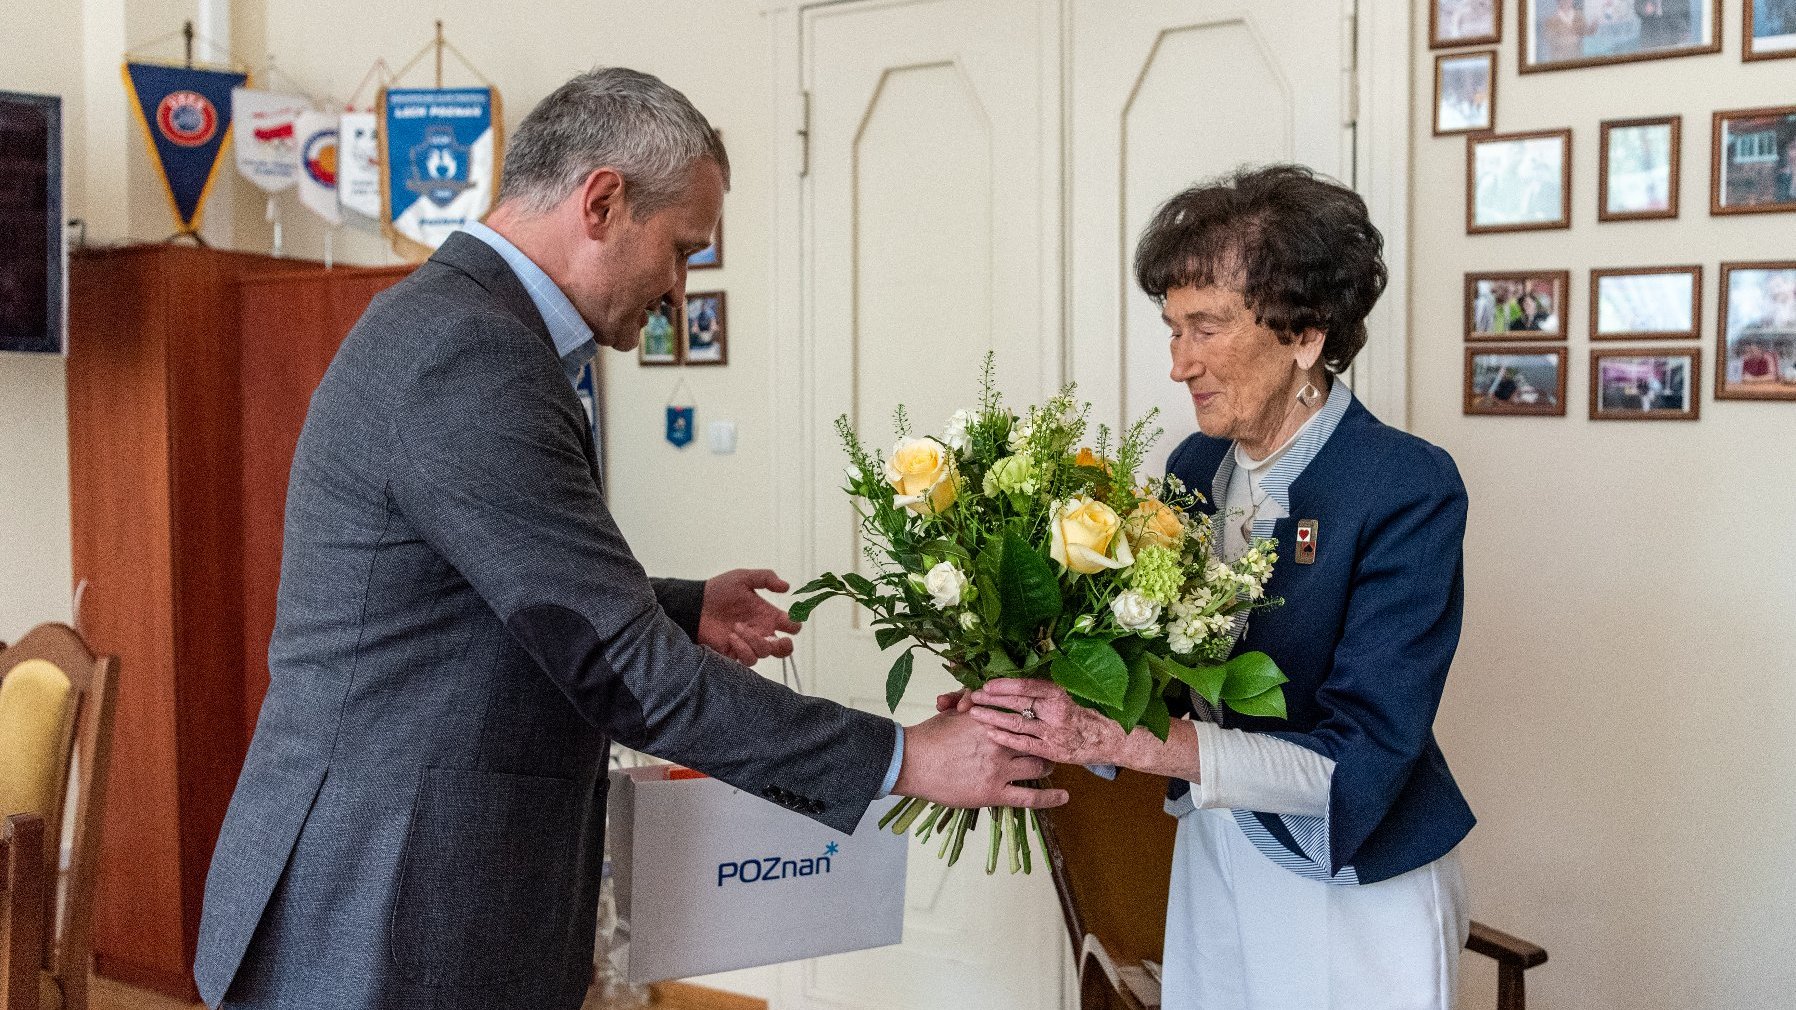 Na zdjęciu zastępca prezydenta Poznania wręczający kwiaty kobiecie